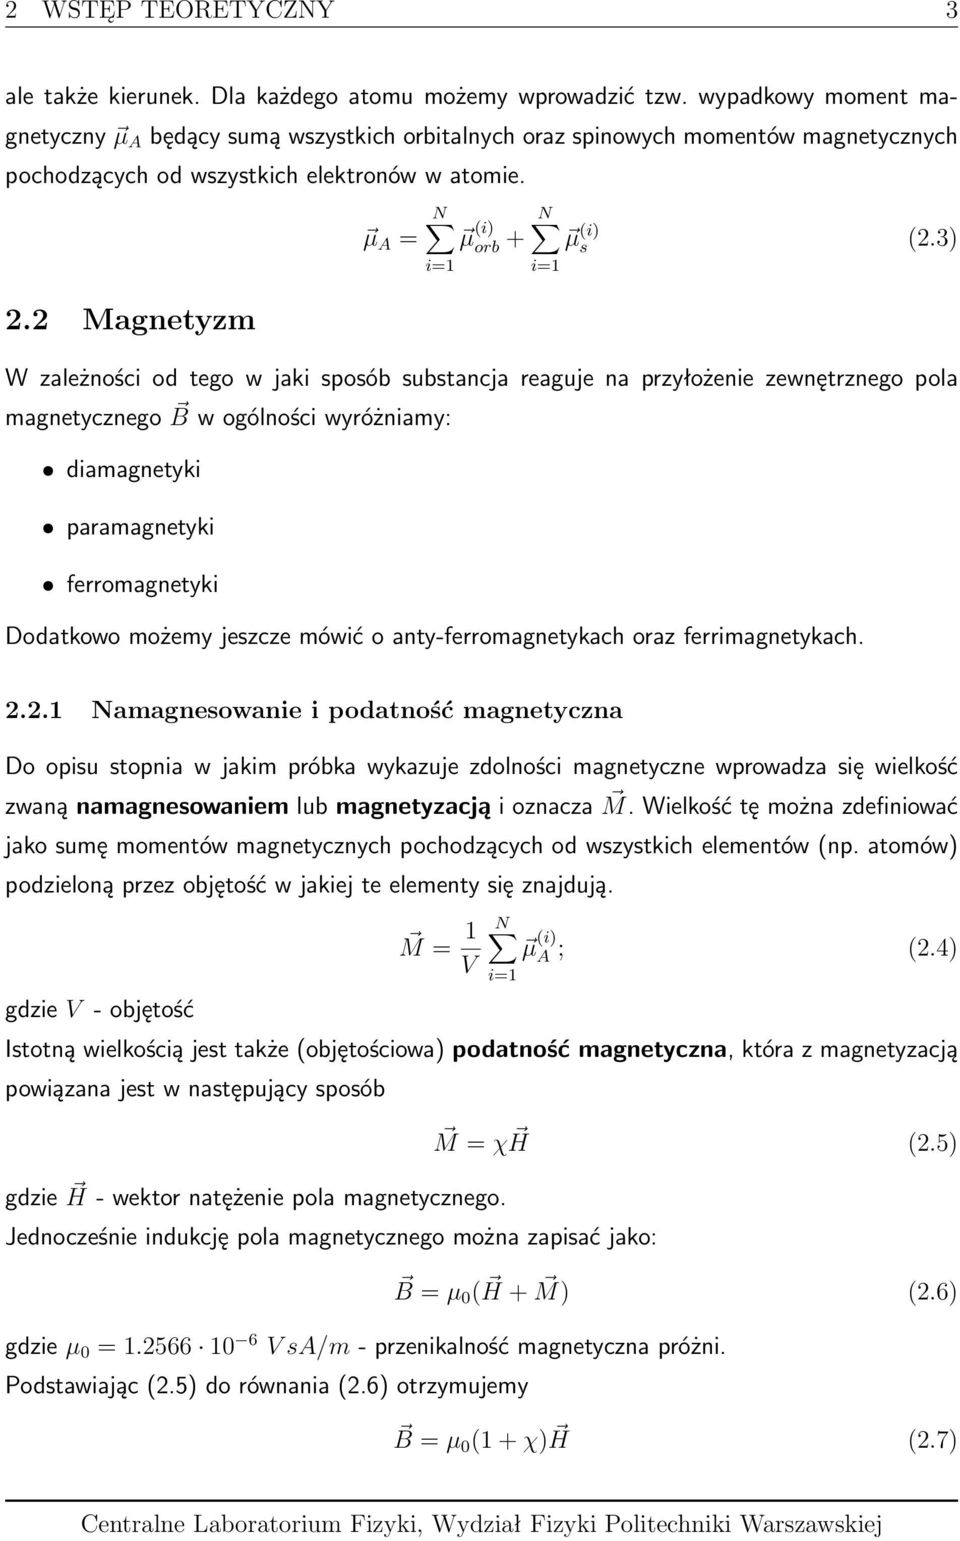 2 Magnetyzm N µ A = µ (i) orb + N µ (i) s (2.